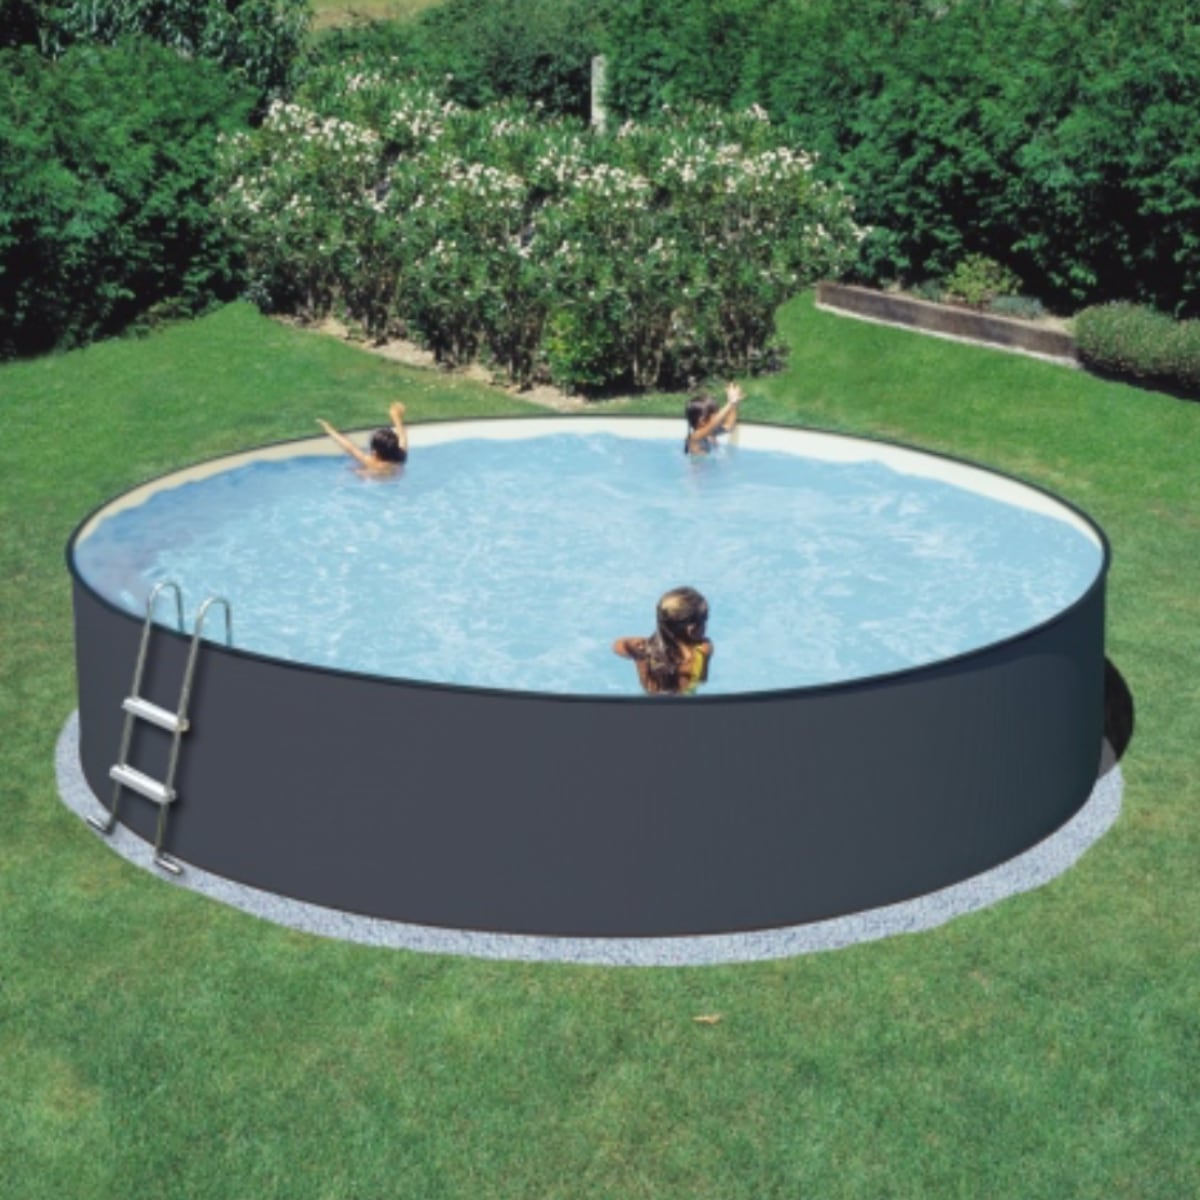 Brug SummerFun standard rund pool 4,5 x 0,9 m til en forbedret oplevelse